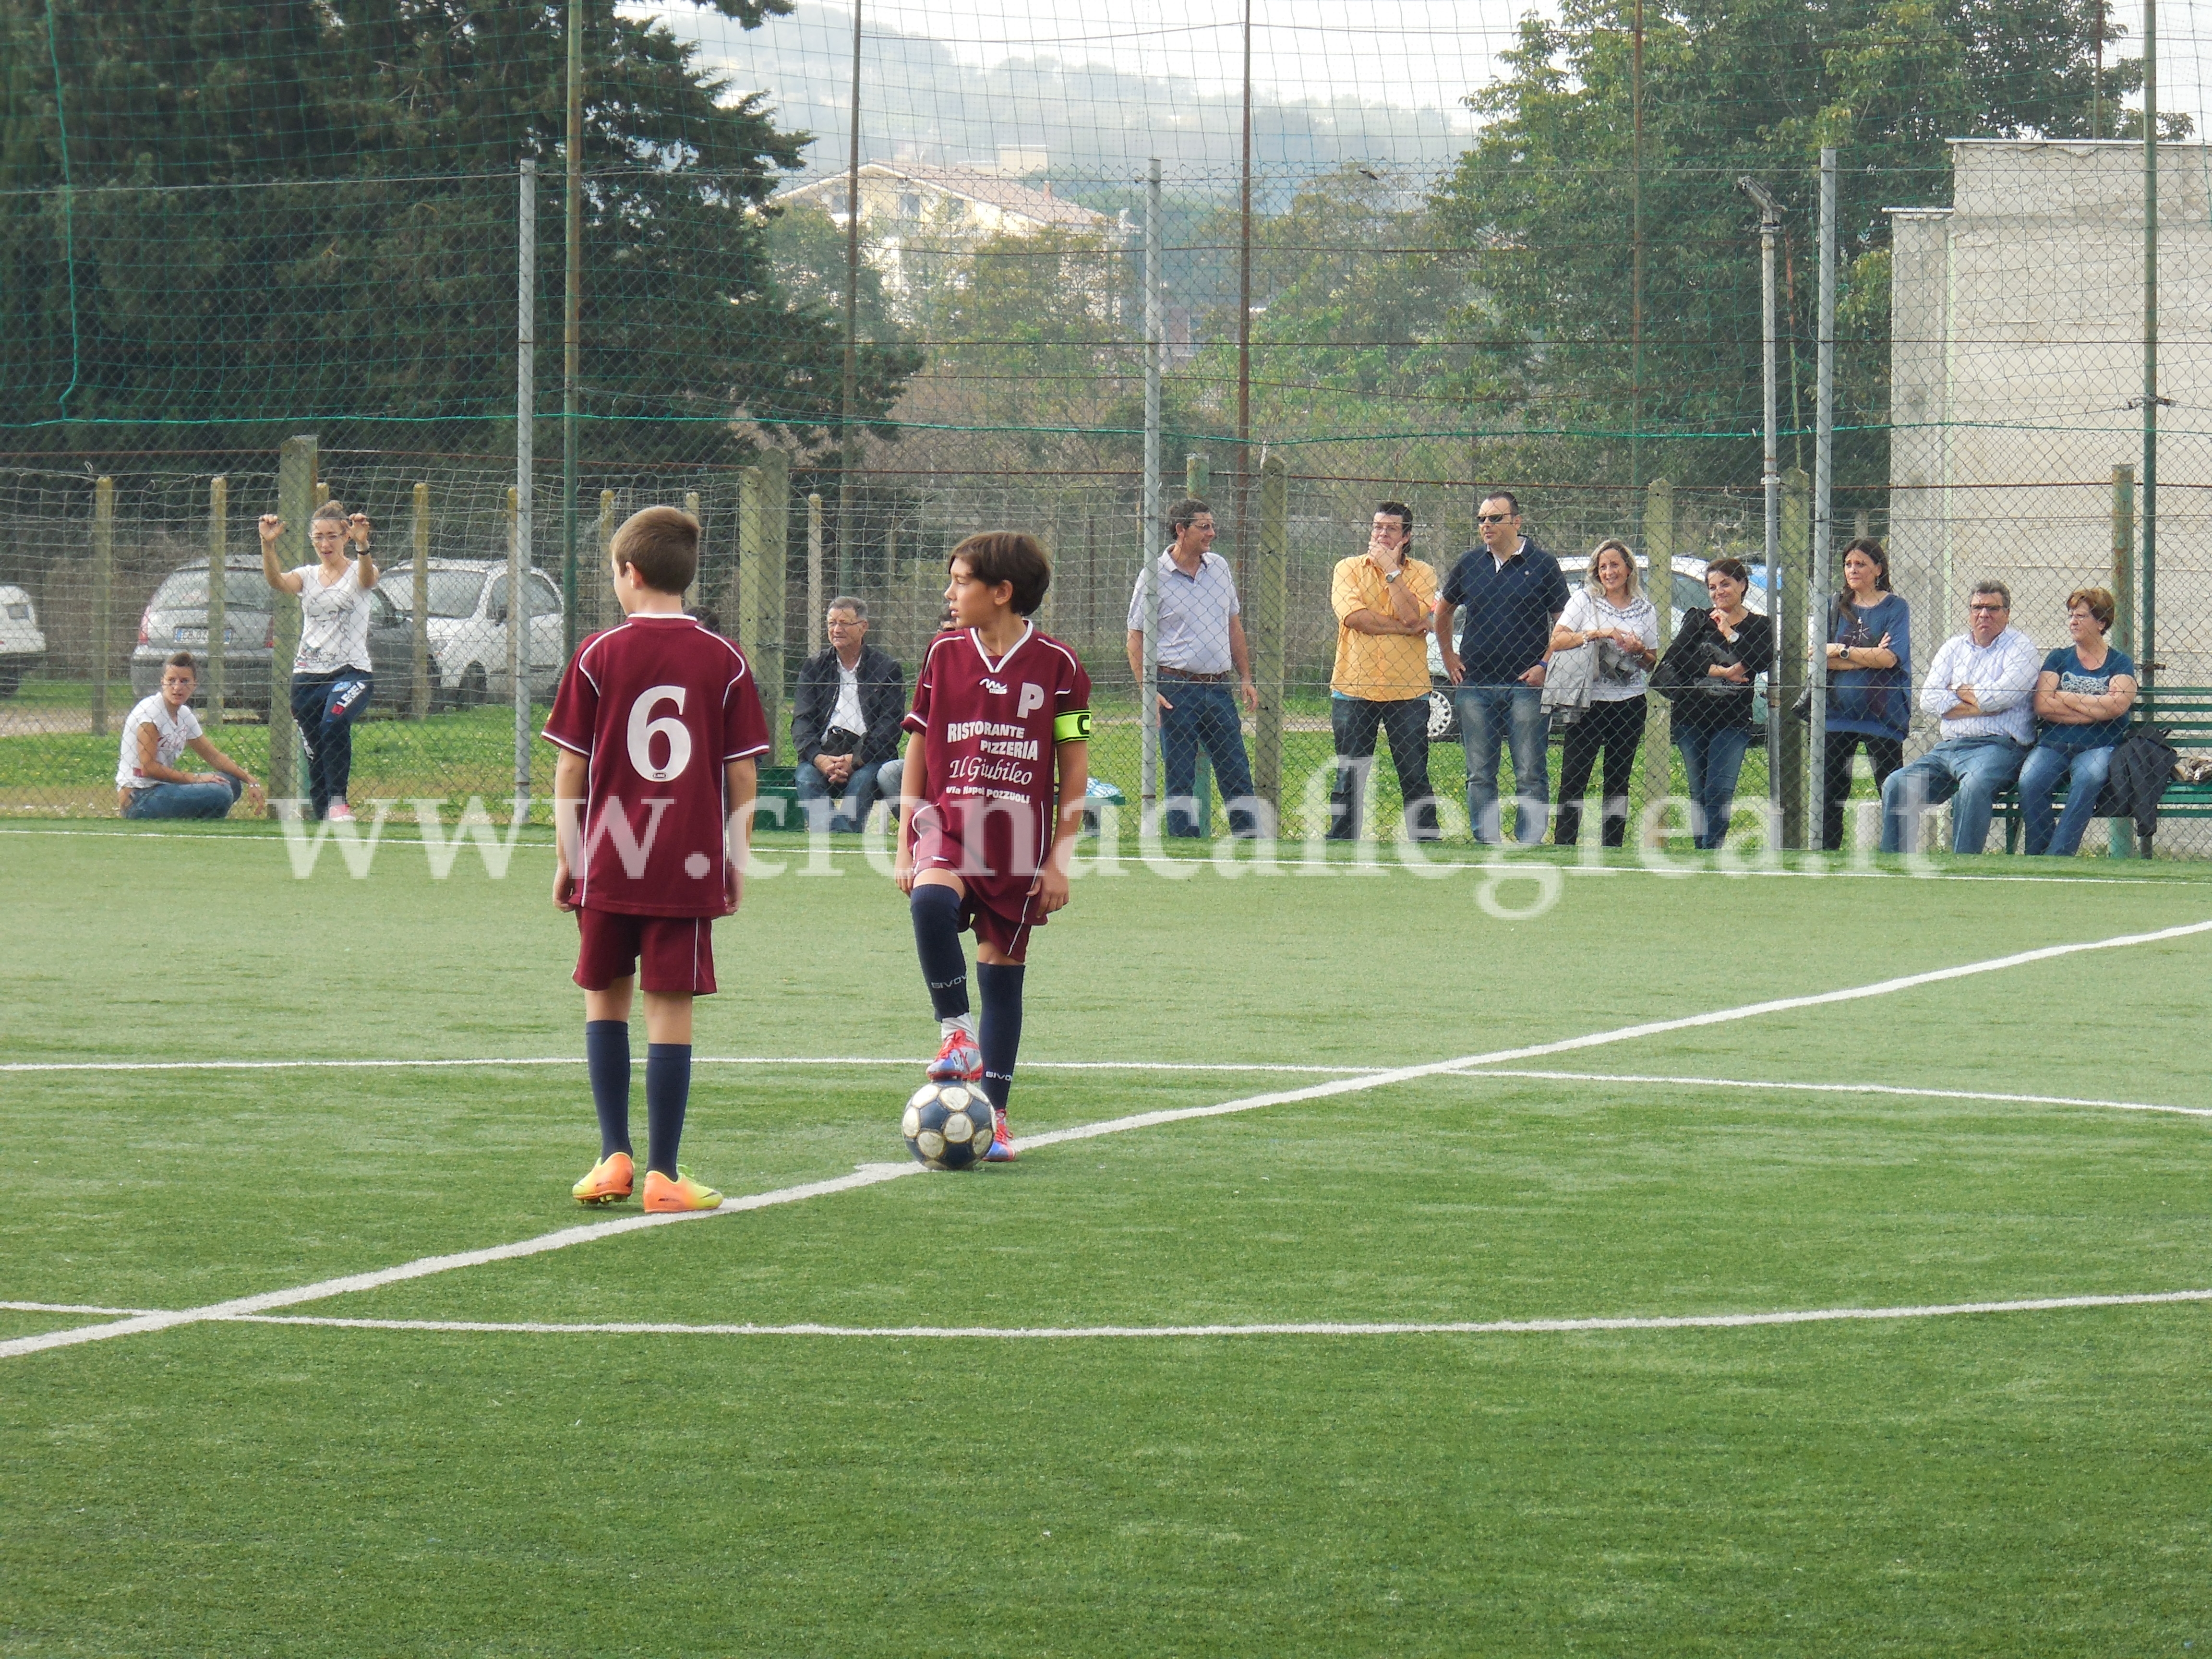 SCUOLE CALCIO/ Il Catania si affida alla Scuola Calcio Gescal per la scoperta di giovani talenti